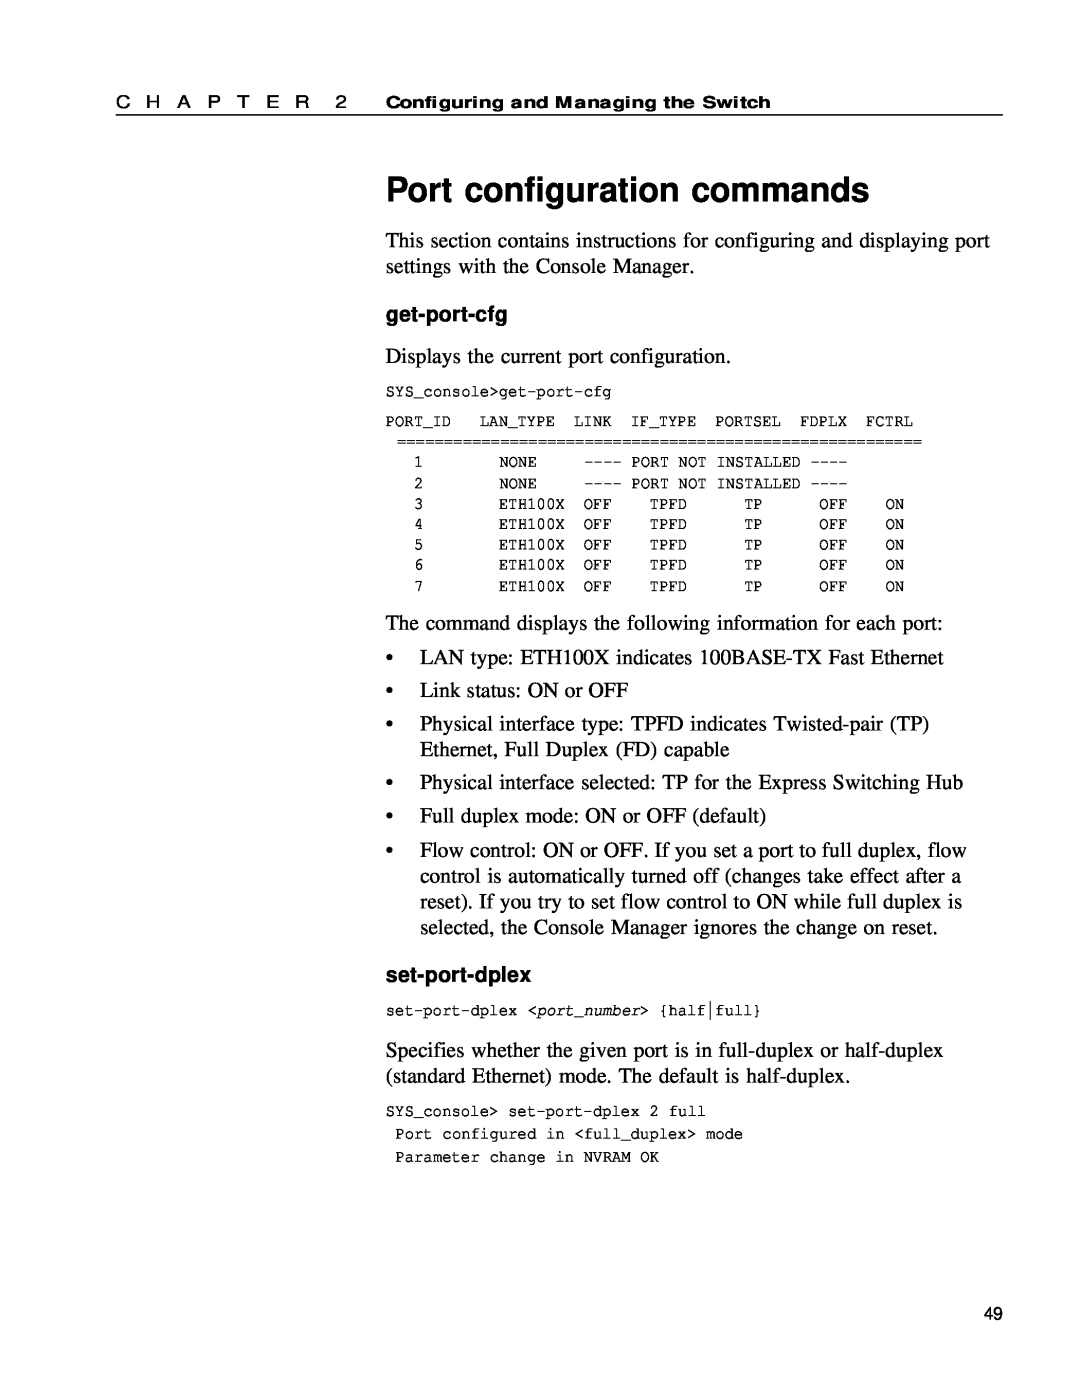 Intel 654655-001 manual Port configuration commands, get-port-cfg, set-port-dplex 